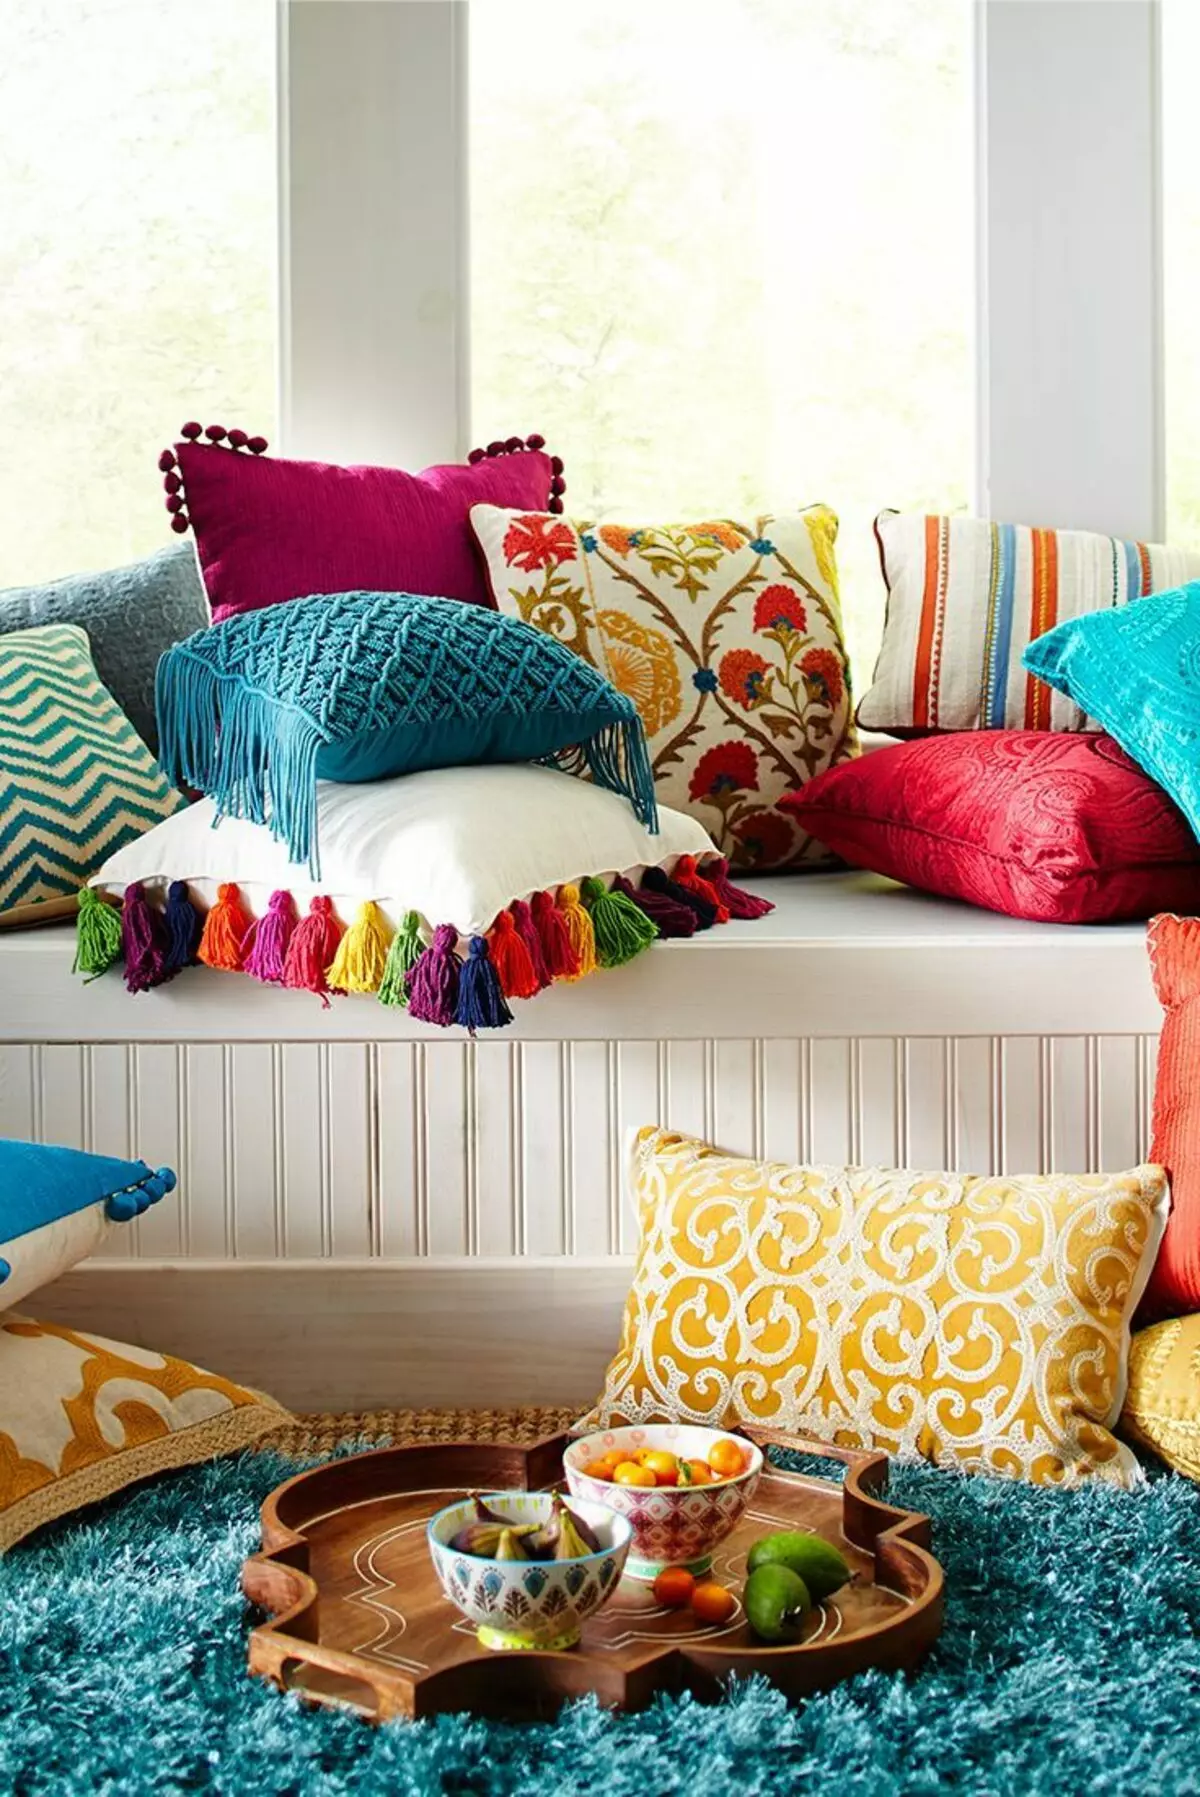 The color is beautiful. Декоративные подушки. Цветные подушки в интерьере. Стильные декоративные подушки. Яркие декоративные подушки в интерьере.